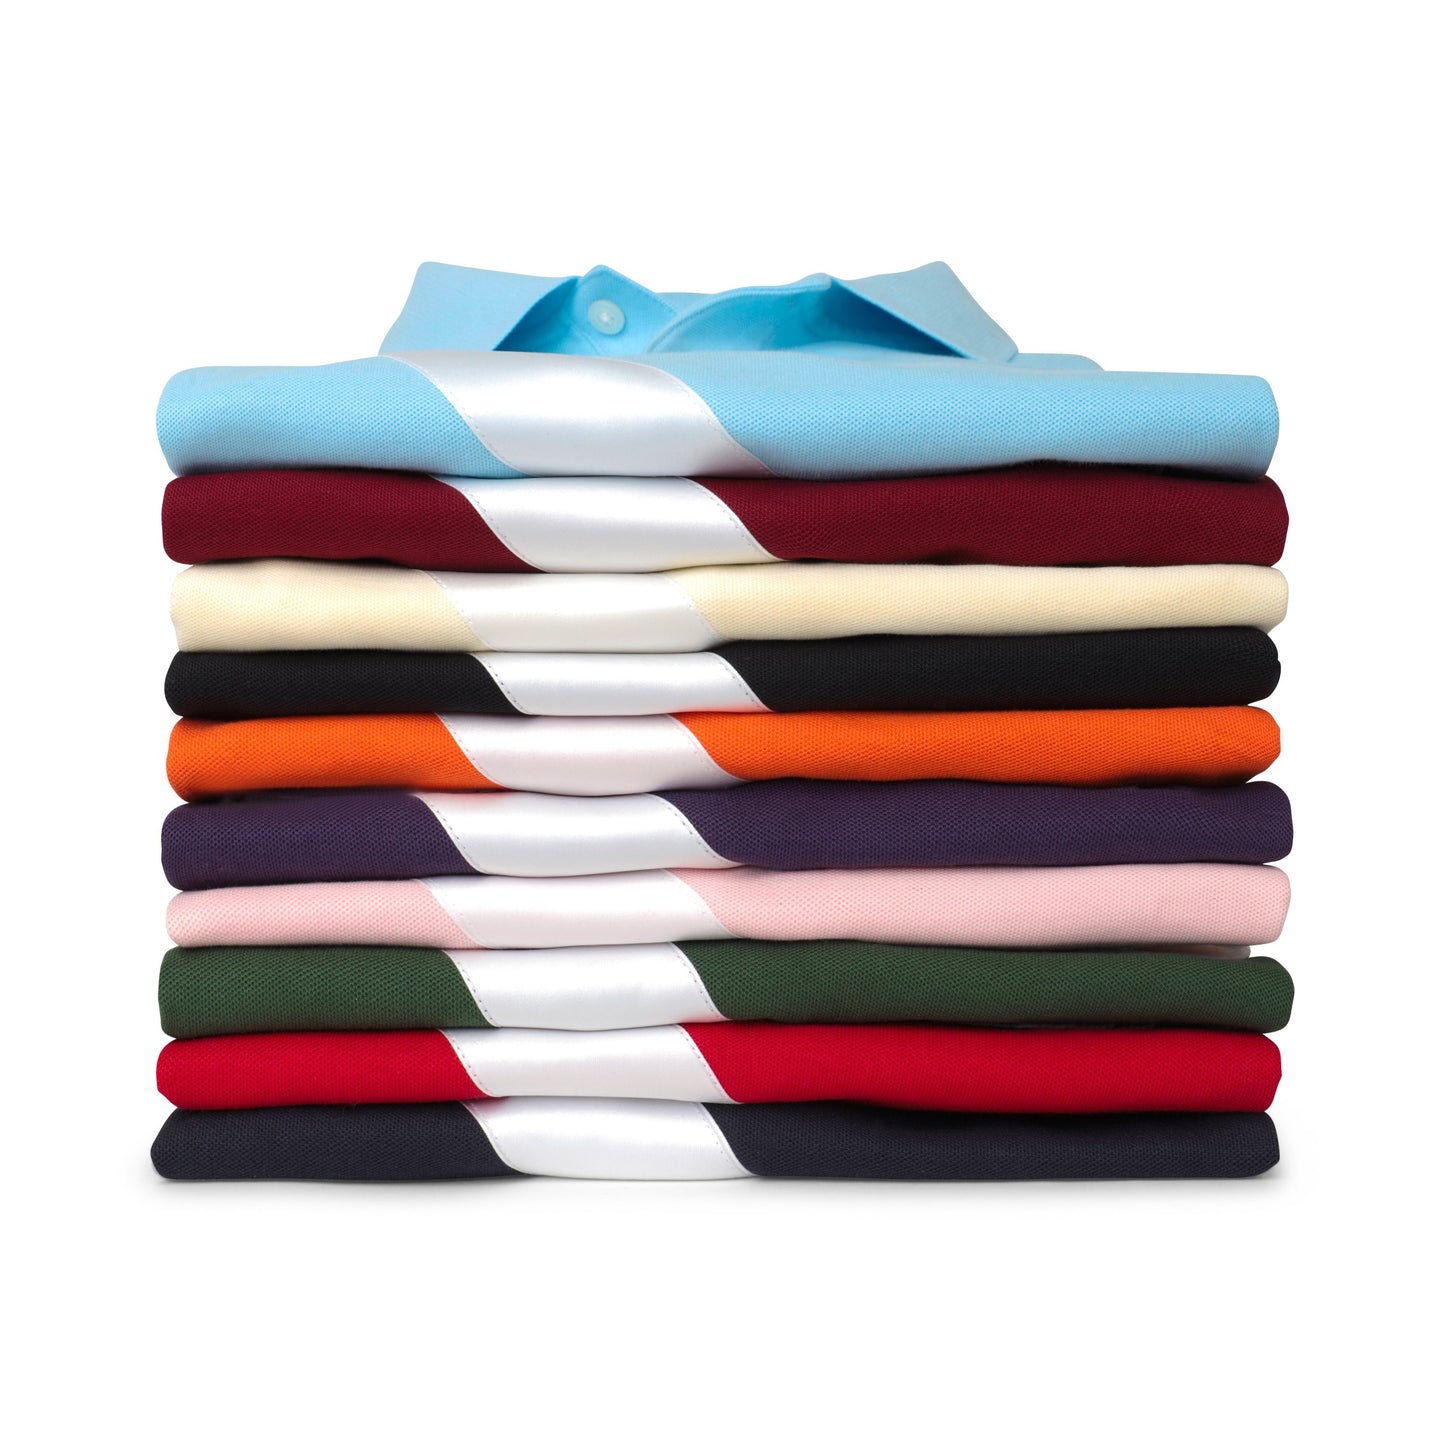 100% Pima Cotton Stripe Polo (Authentic Polo Shirt with Satin Stripe - Pink)